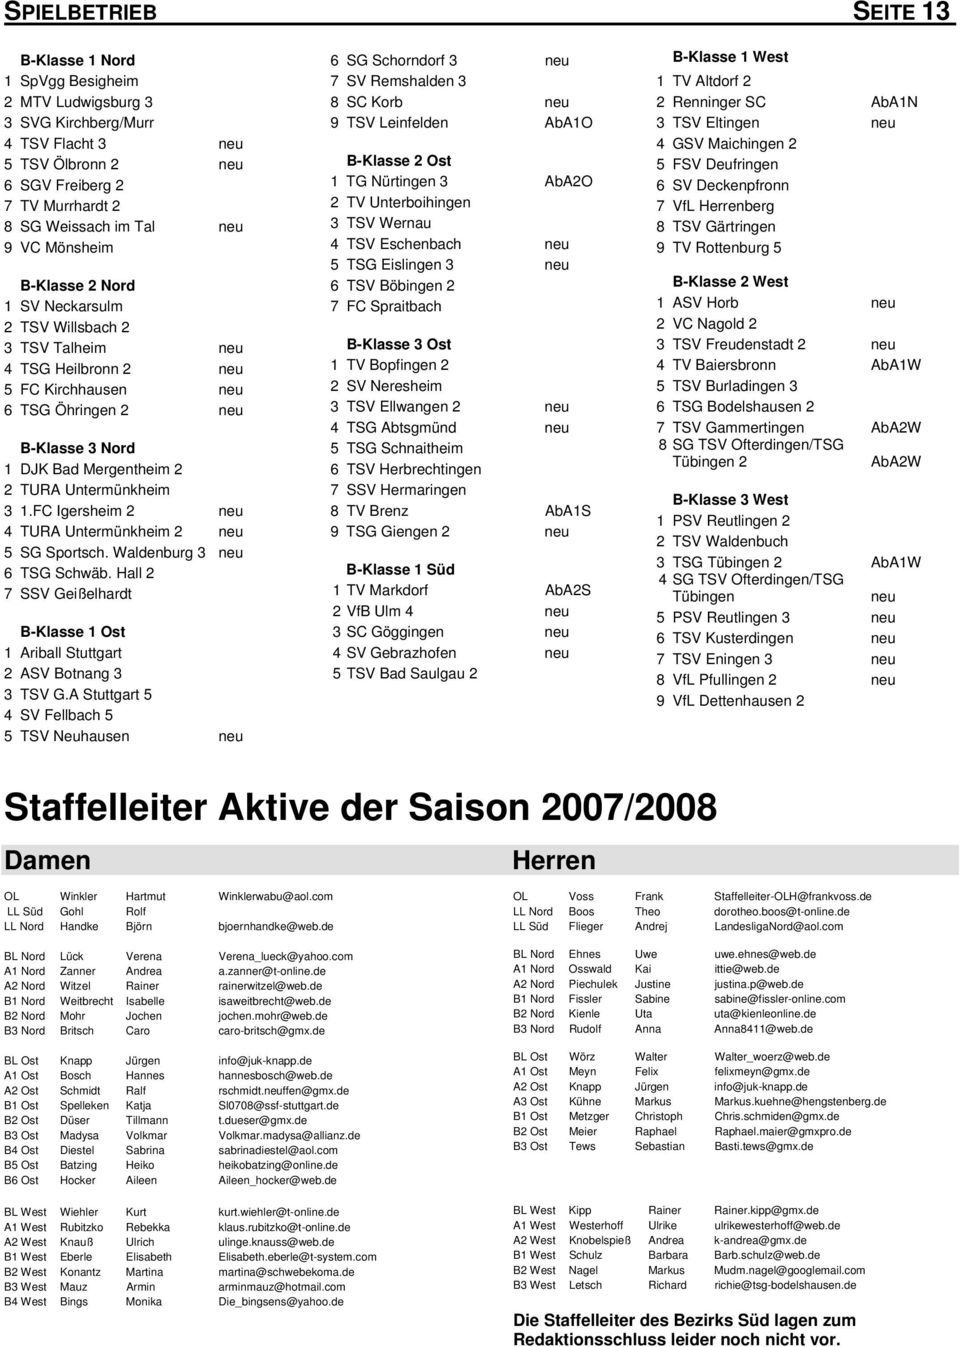 Untermünkheim 3 1.FC Igersheim 2 neu 4 TURA Untermünkheim 2 neu 5 SG Sportsch. Waldenburg 3 neu 6 TSG Schwäb. Hall 2 7 SSV Geißelhardt B-Klasse 1 Ost 1 Ariball Stuttgart 2 ASV Botnang 3 3 TSV G.